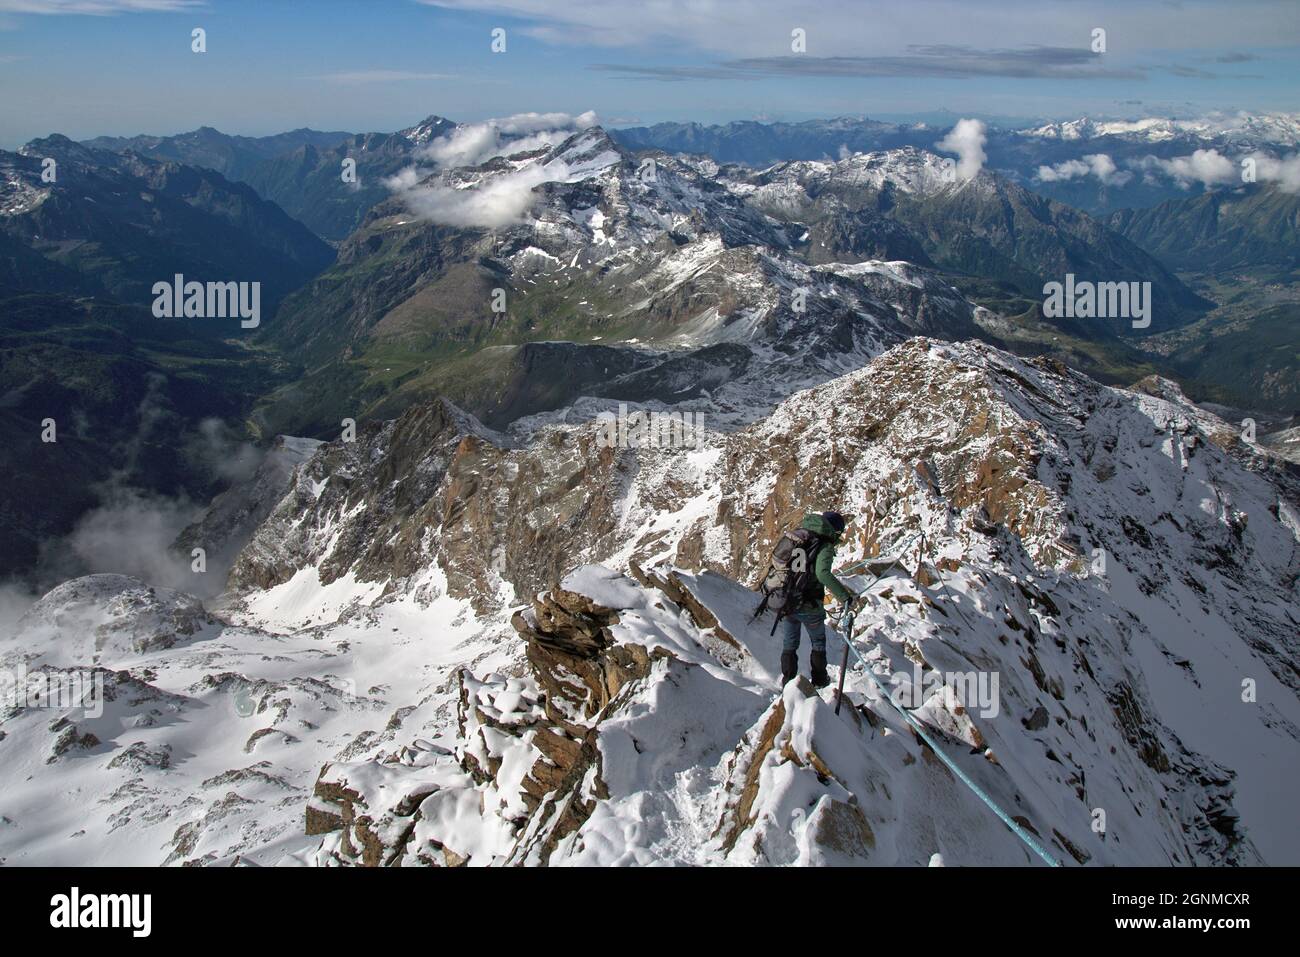 Alpiniste sur un sentier alpin difficile sur une crête rocheuse, Quintino Sella, Alpes Pennines, Vallée d'Aoste, Italie Banque D'Images